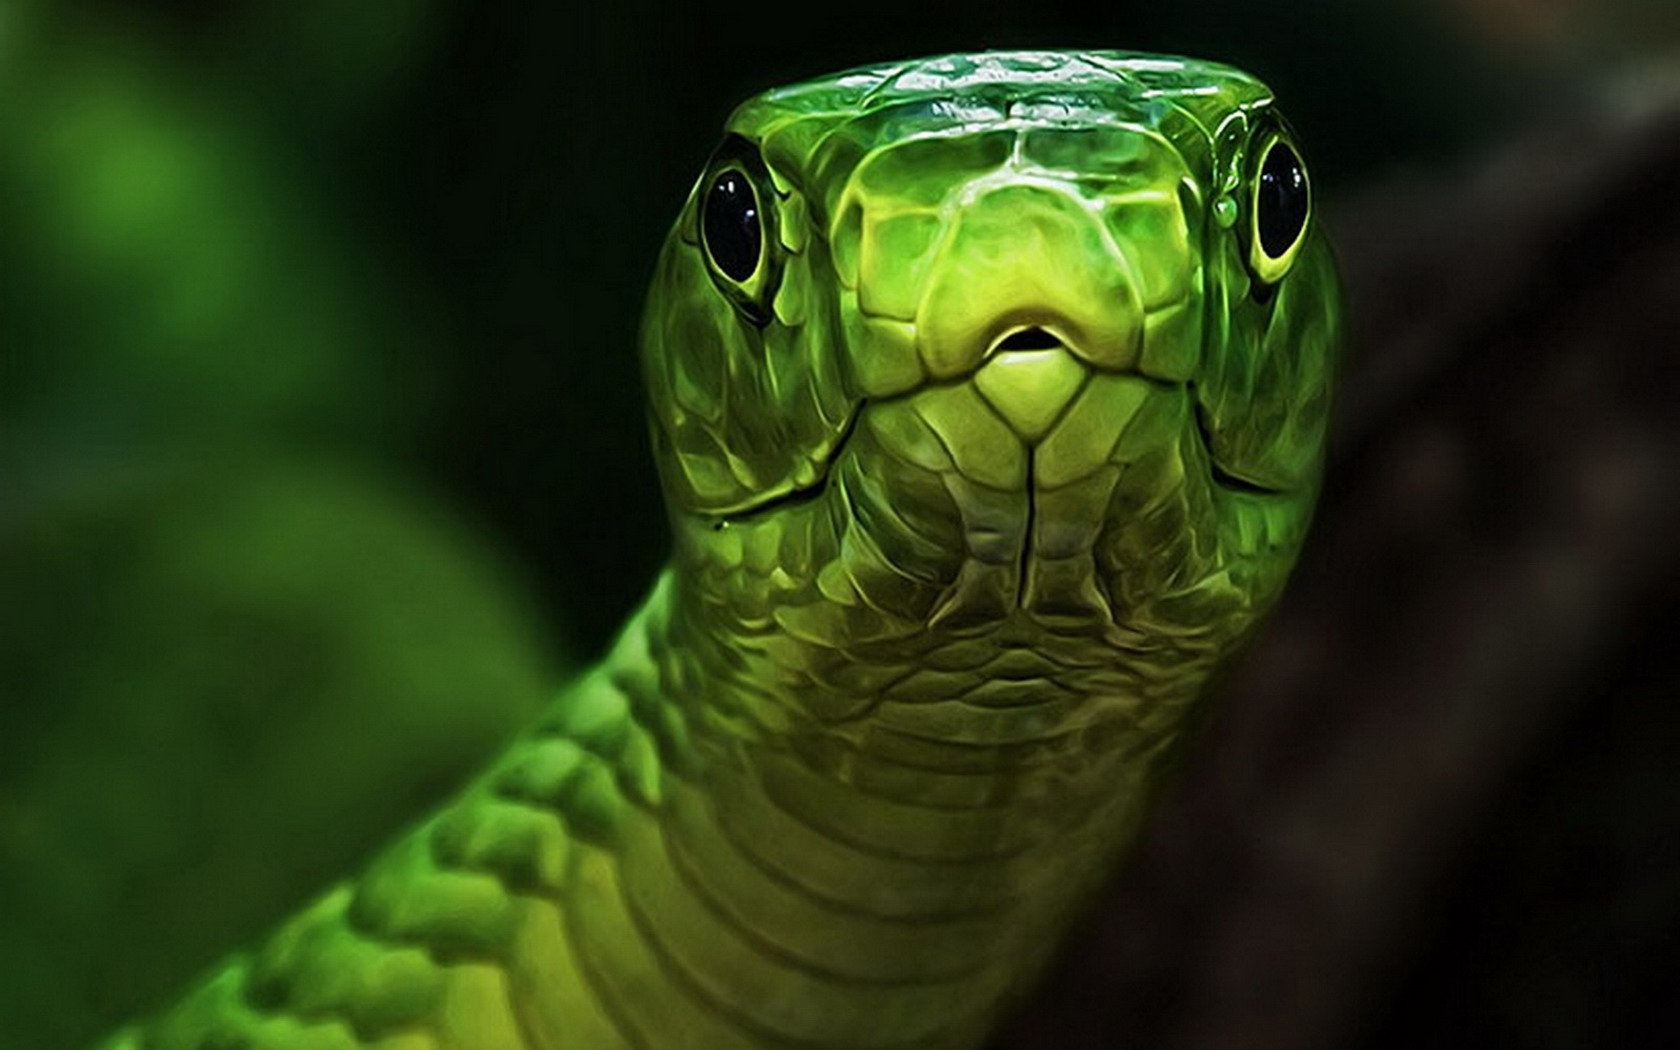 Free download wallpaper Animal, Snake on your PC desktop